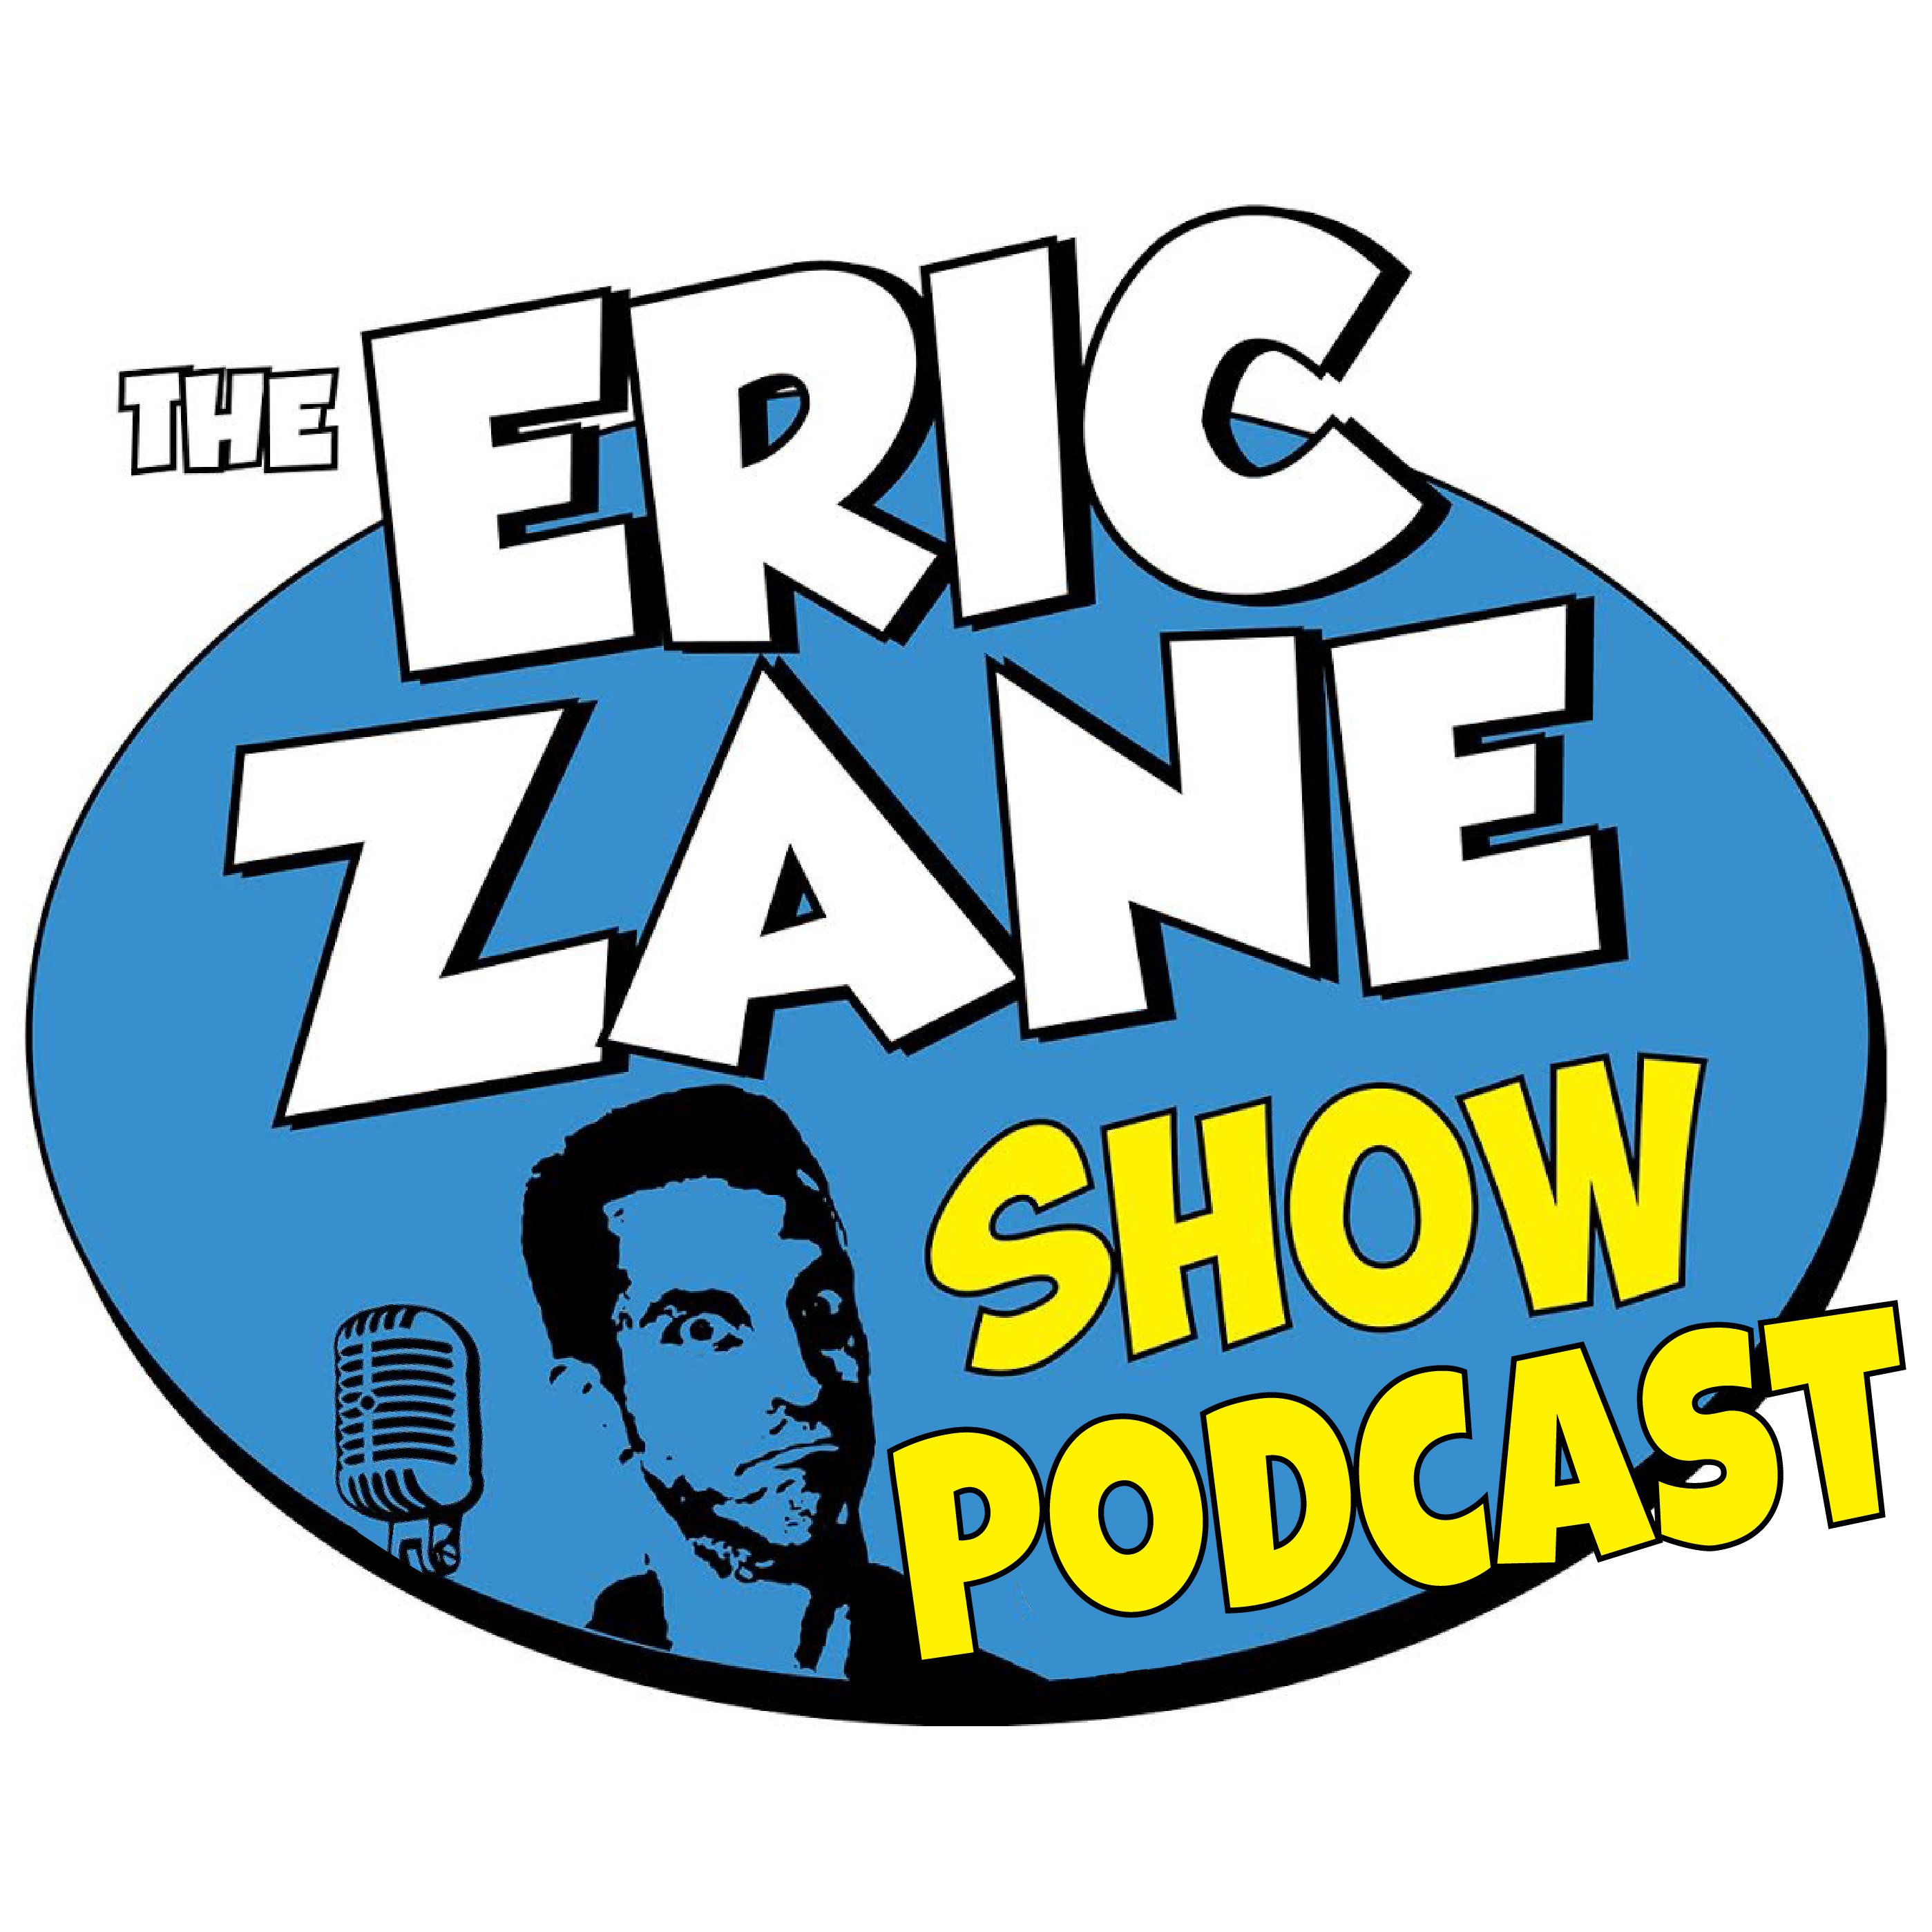 Eric Zane Show Podcast 814 Drama, race war, NFL draft